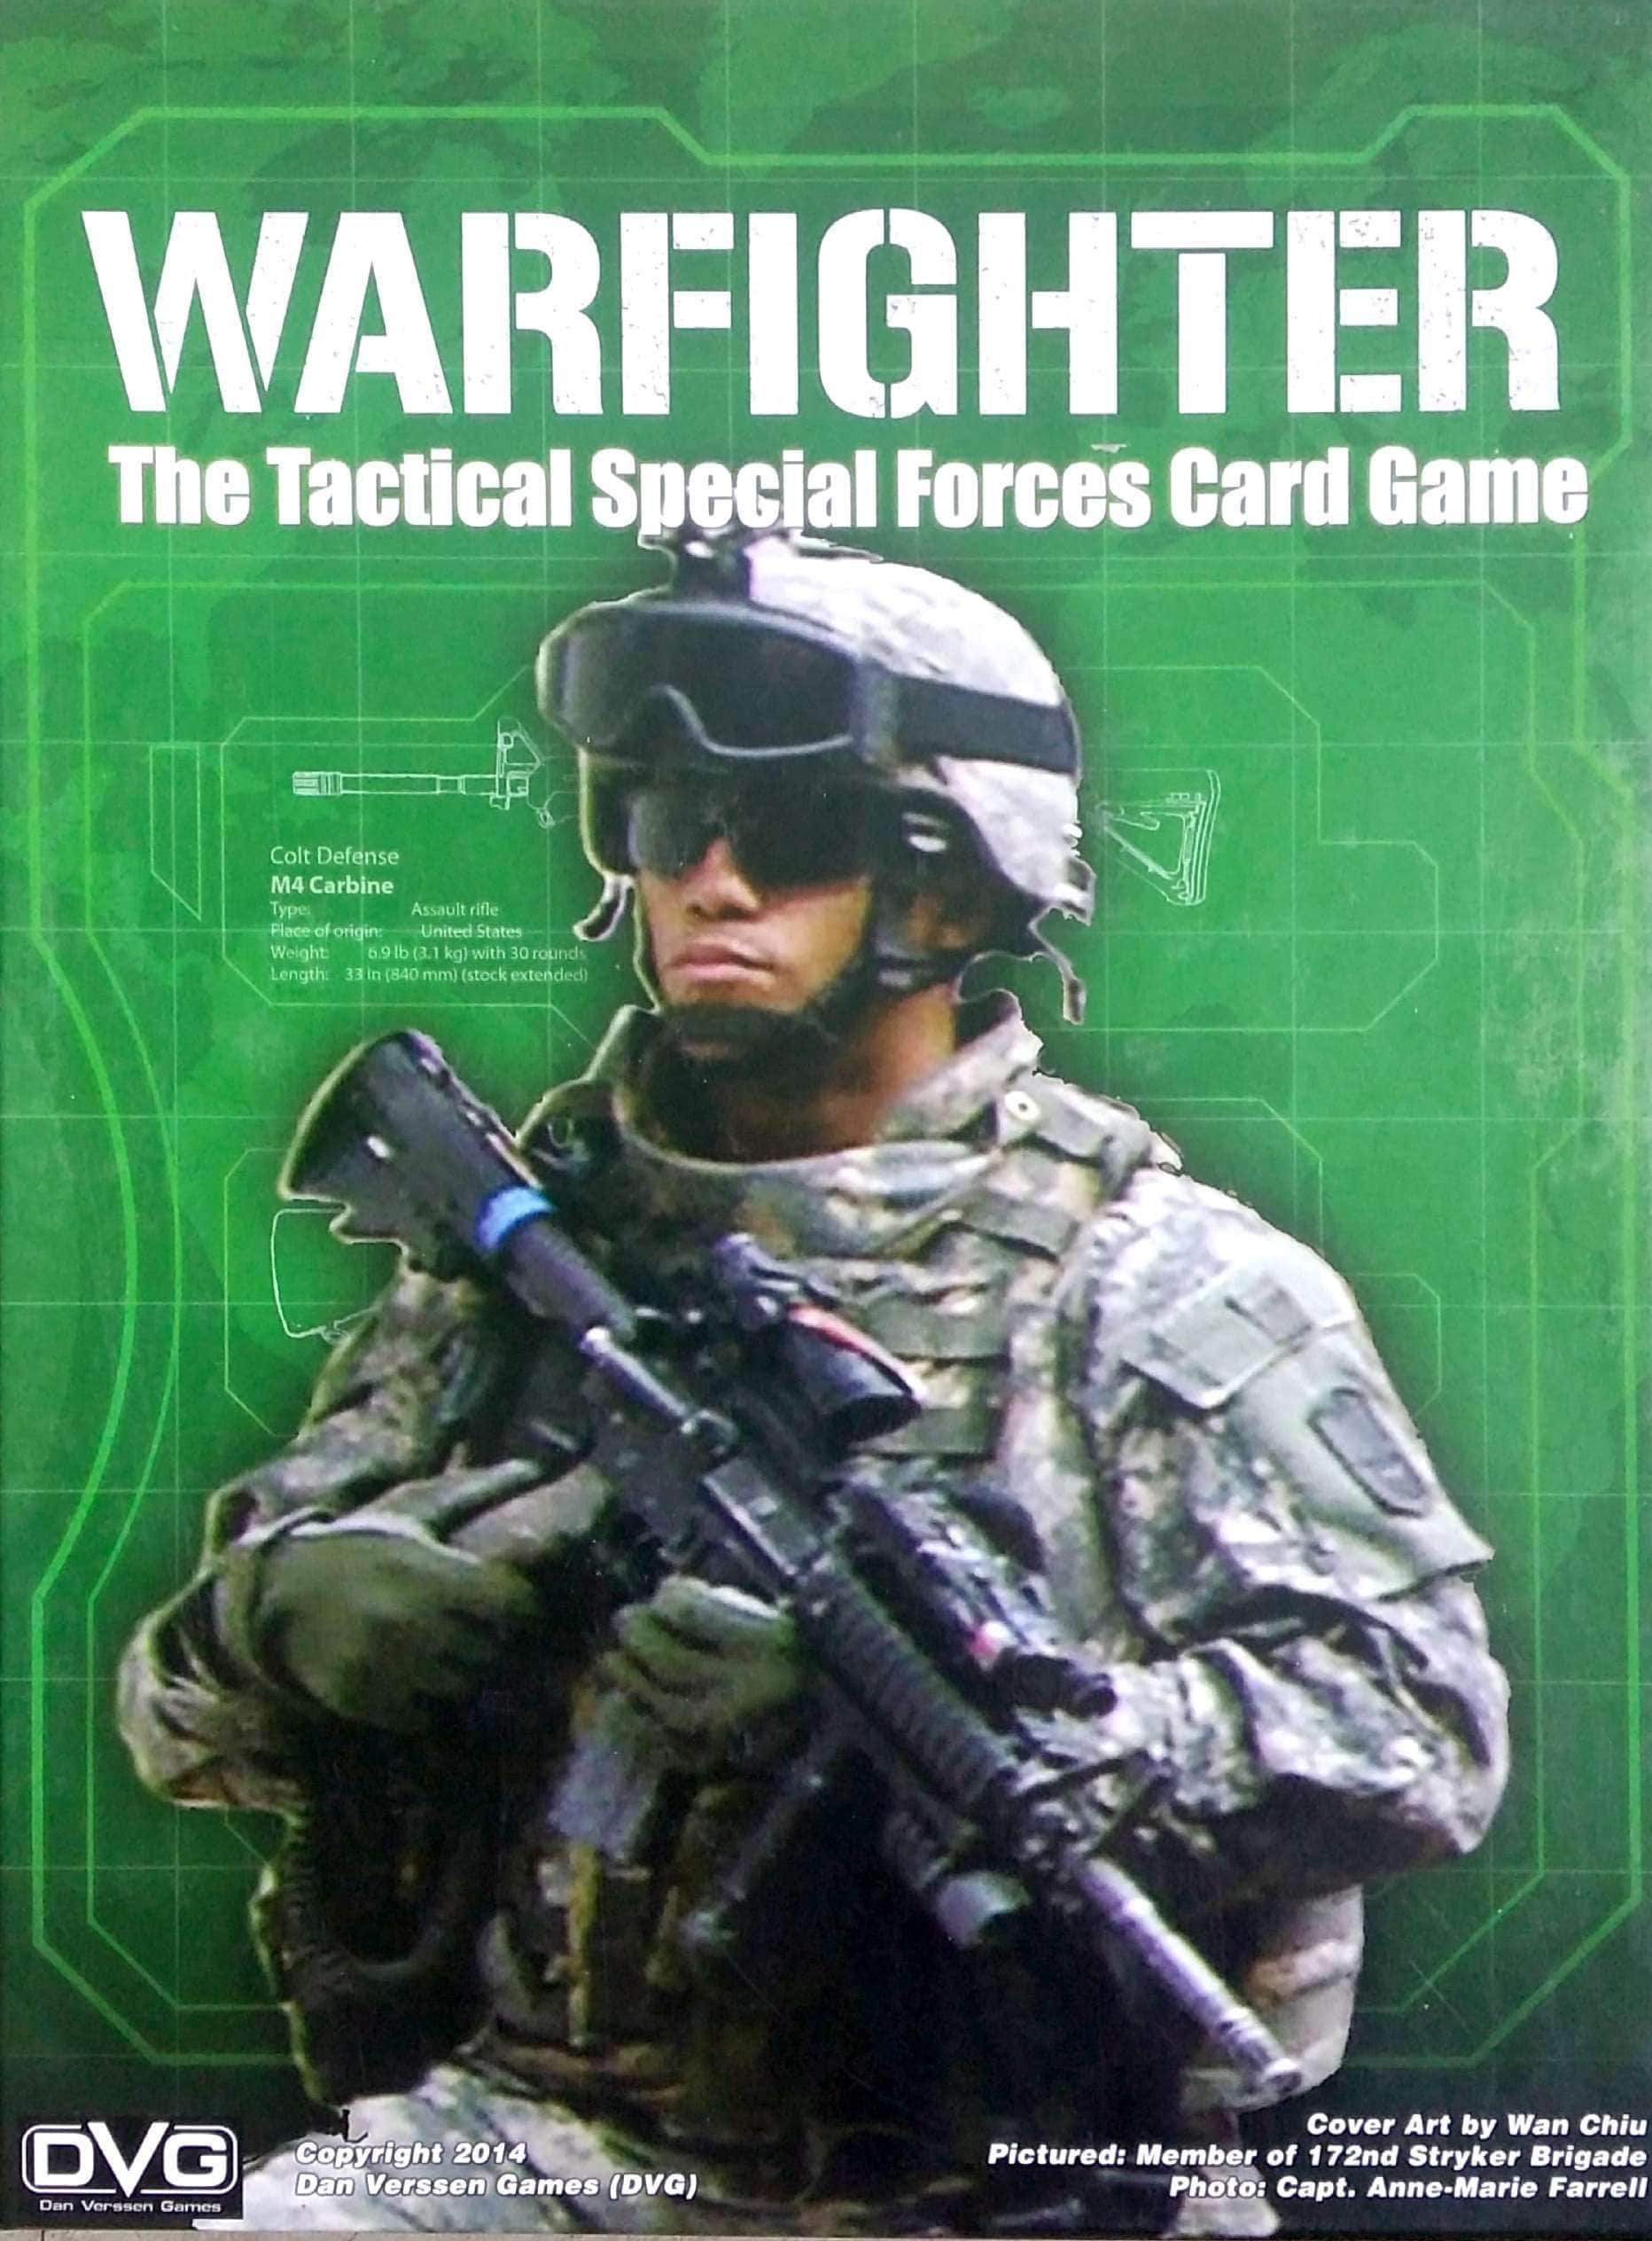 Warfighter: The Tactical Special Forces Card Game (Kickstarter Special) Kickstarter -Brettspiel Dan Verssen Games (DVG) KS800088a